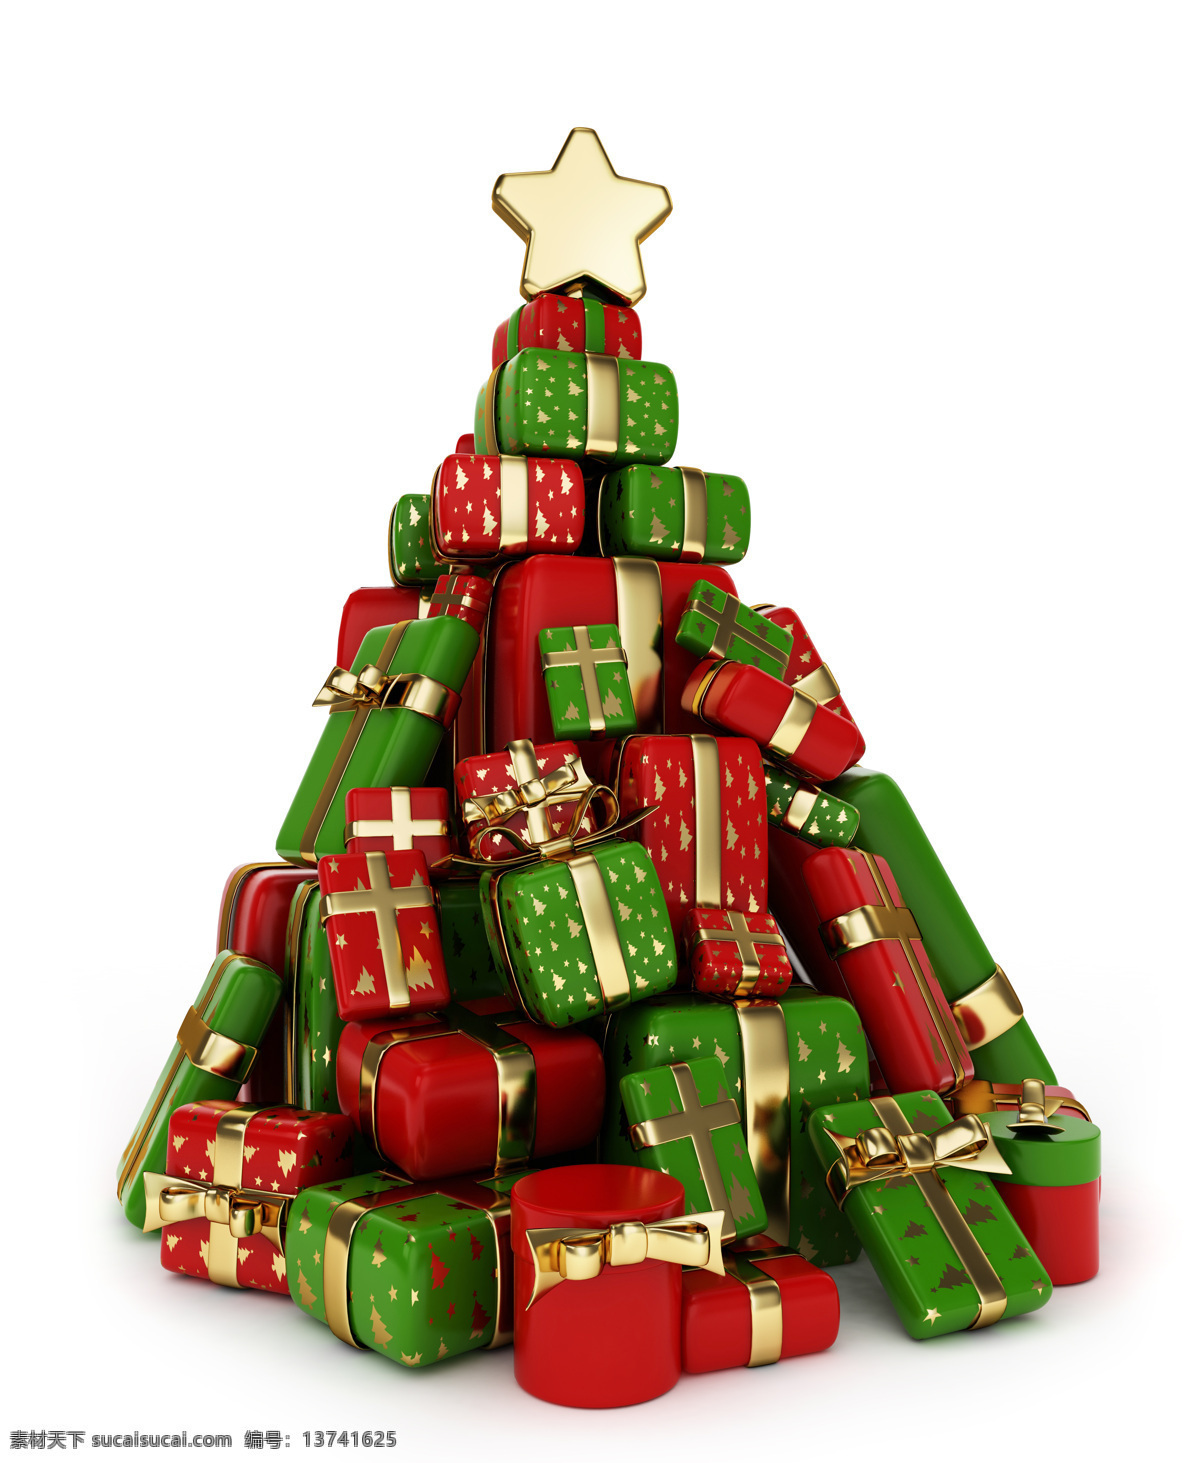 礼物圣诞树 礼物 礼盒 圣诞树 立体图案 圣诞节 节日庆典 生活百科 白色